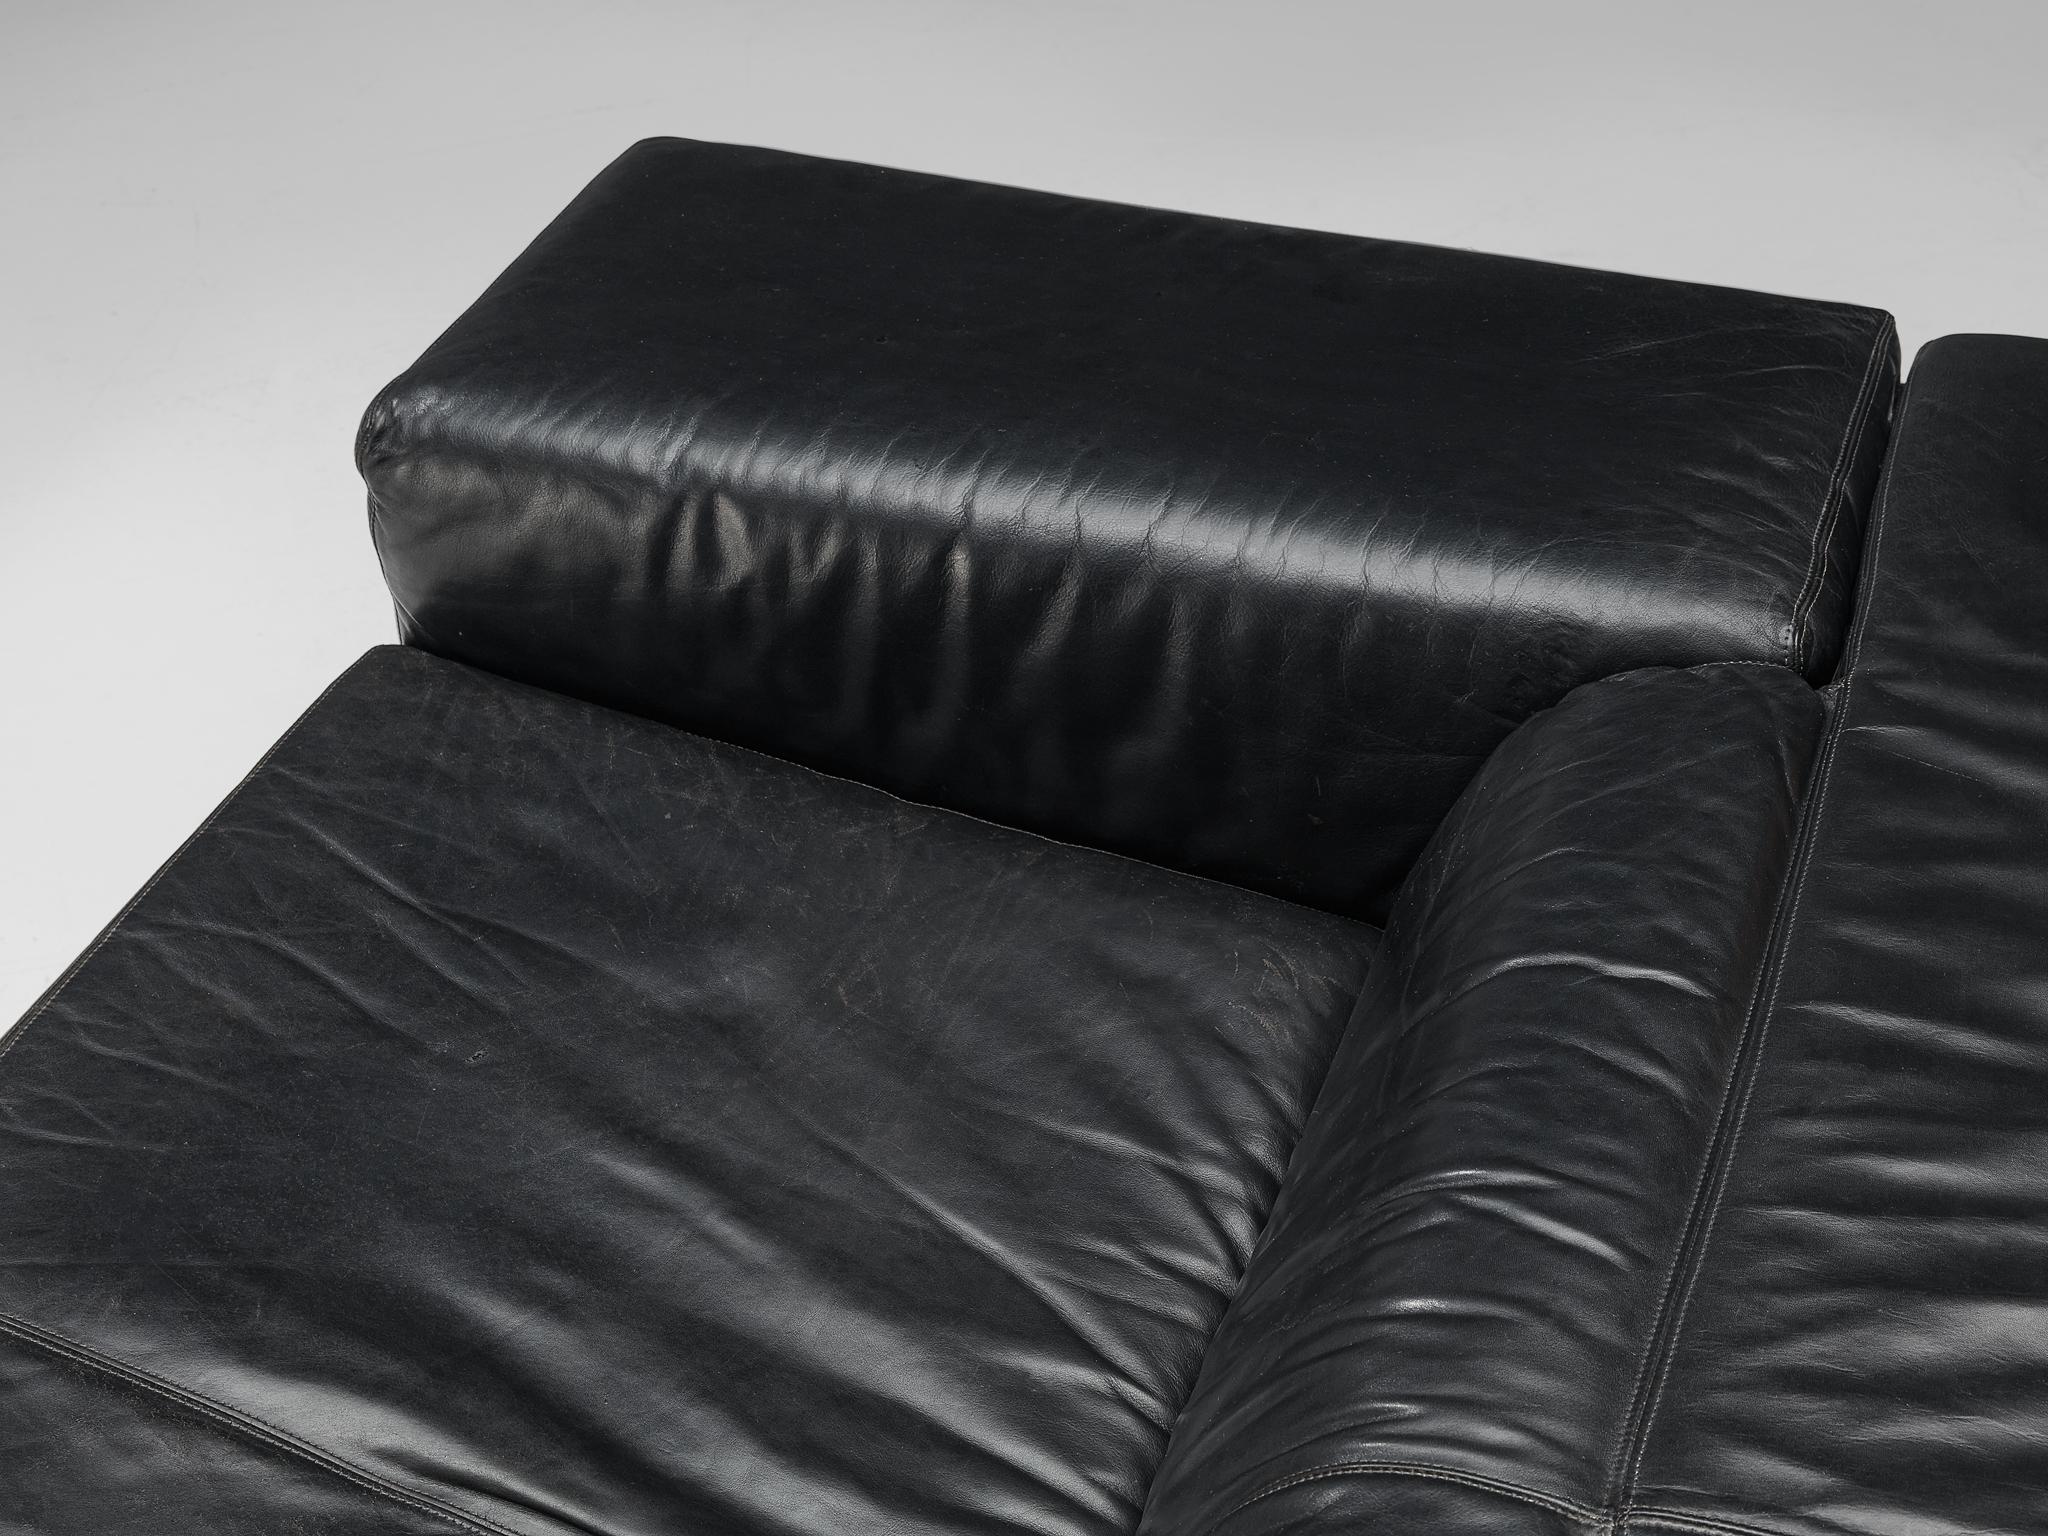 Cini Boeri for Knoll 'Brigadiere' Sofa in Black Leather  For Sale 2